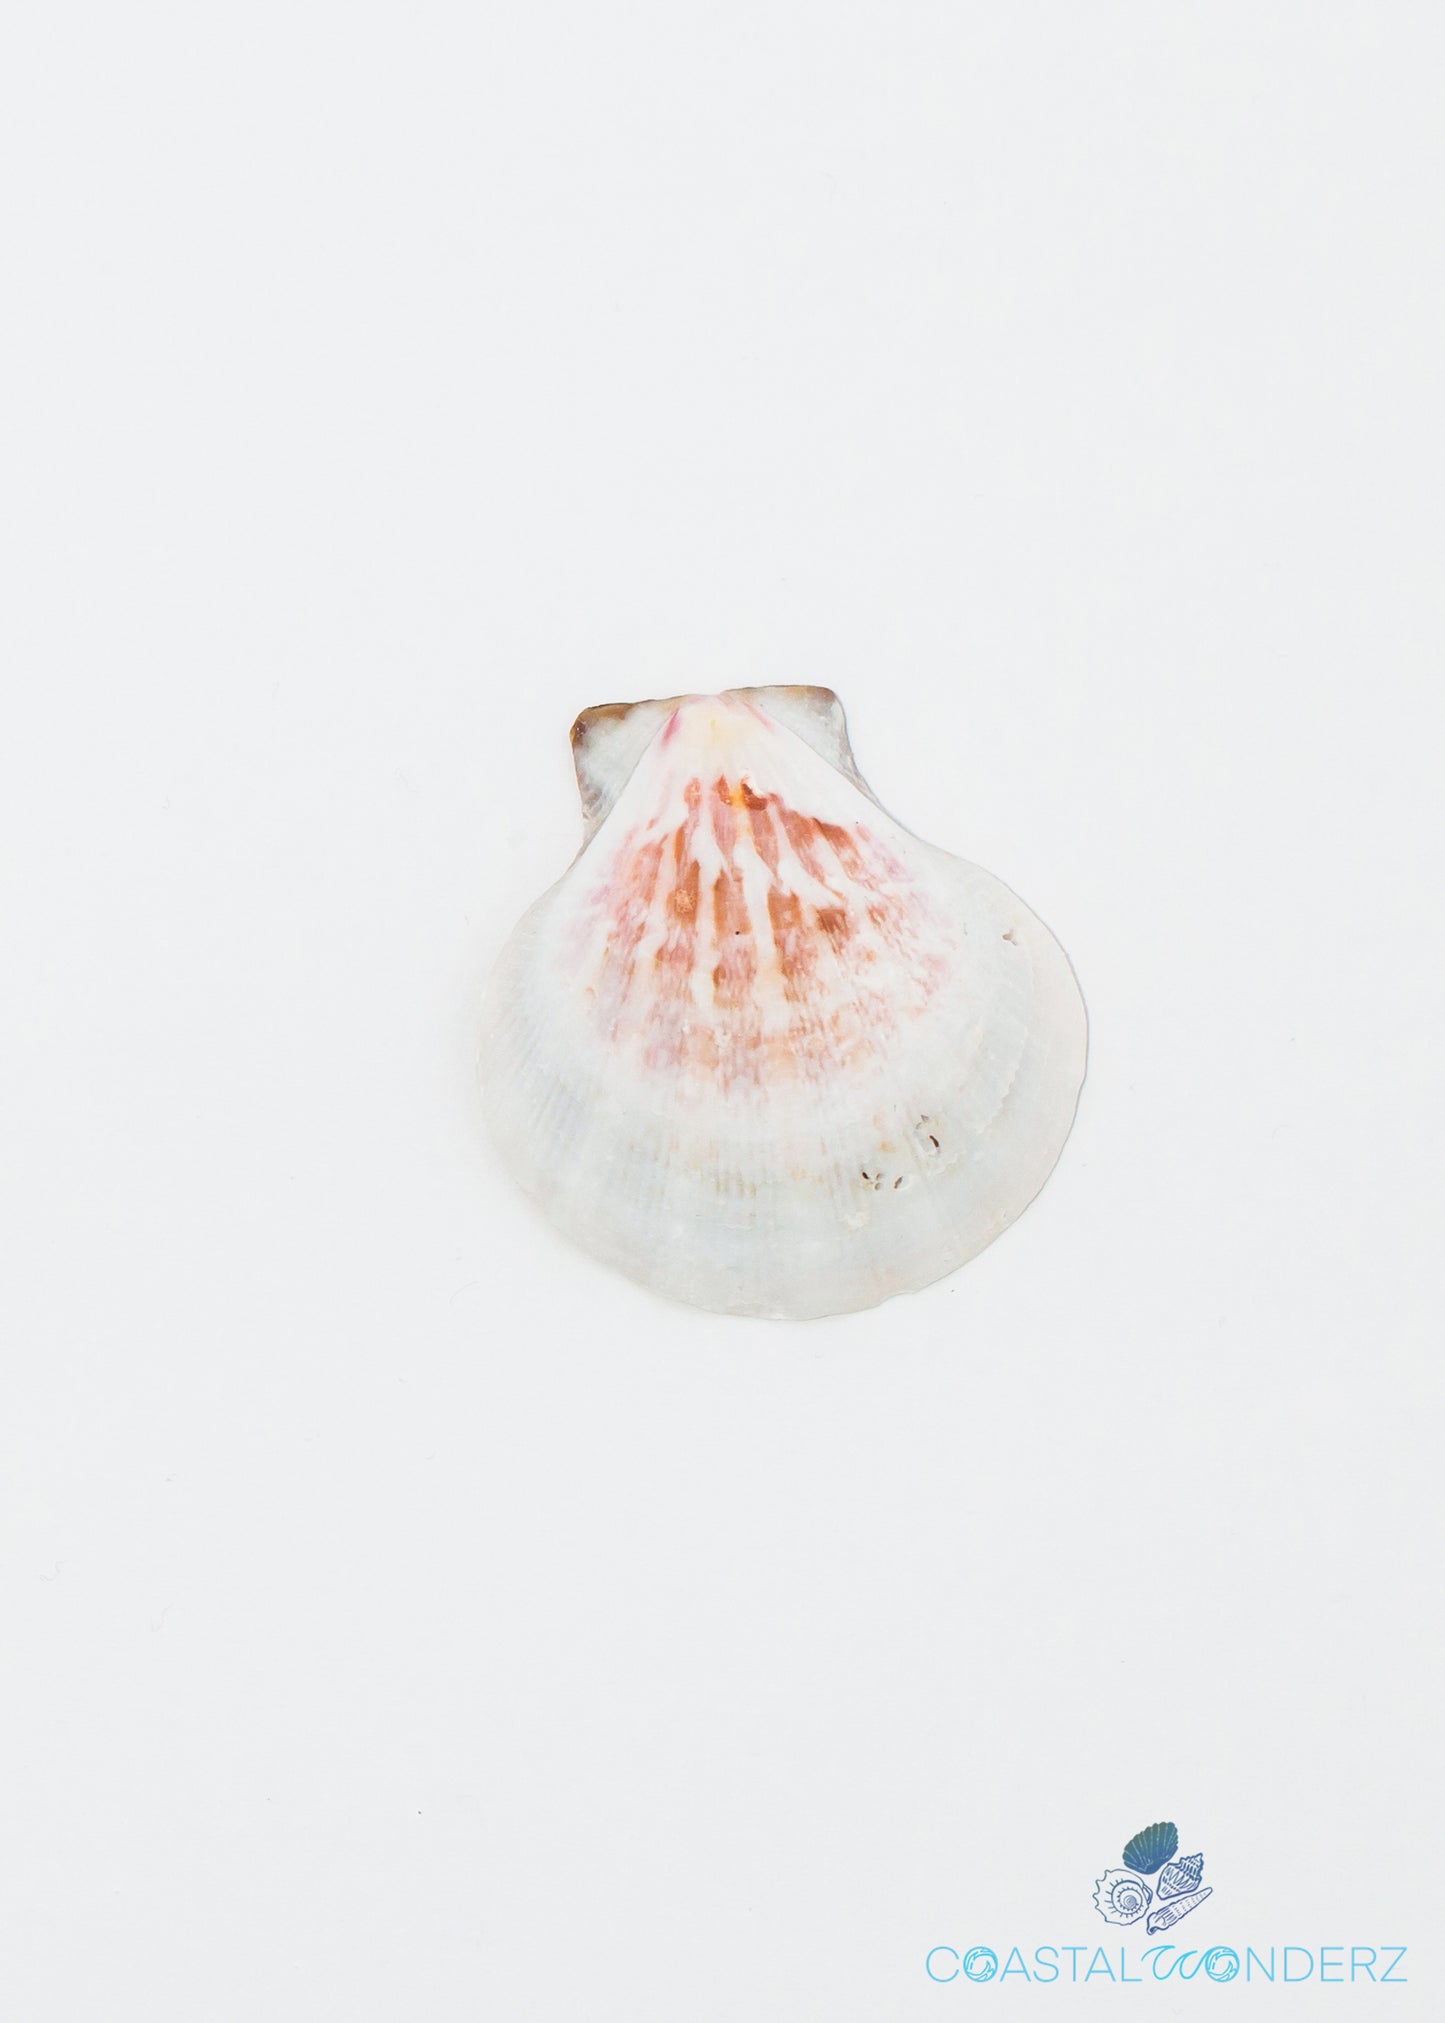 Distant Scallop Shell (Pecten Vexillum)